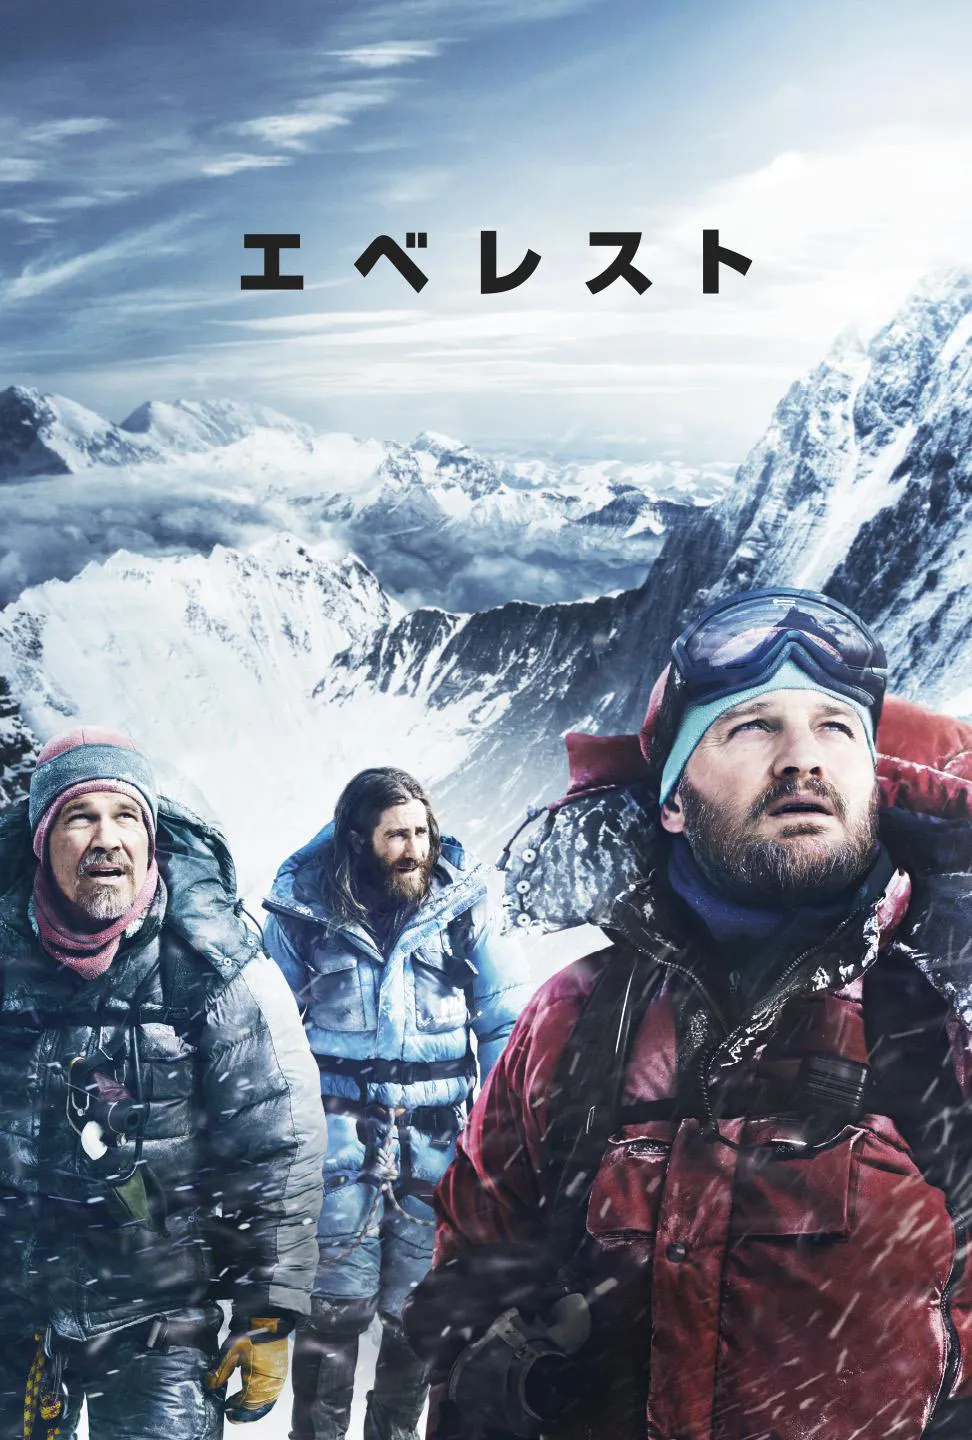 実際の大量遭難事故を基にした映画「エベレスト」が、3月5日(土)夜7:00よりBS12にて放送